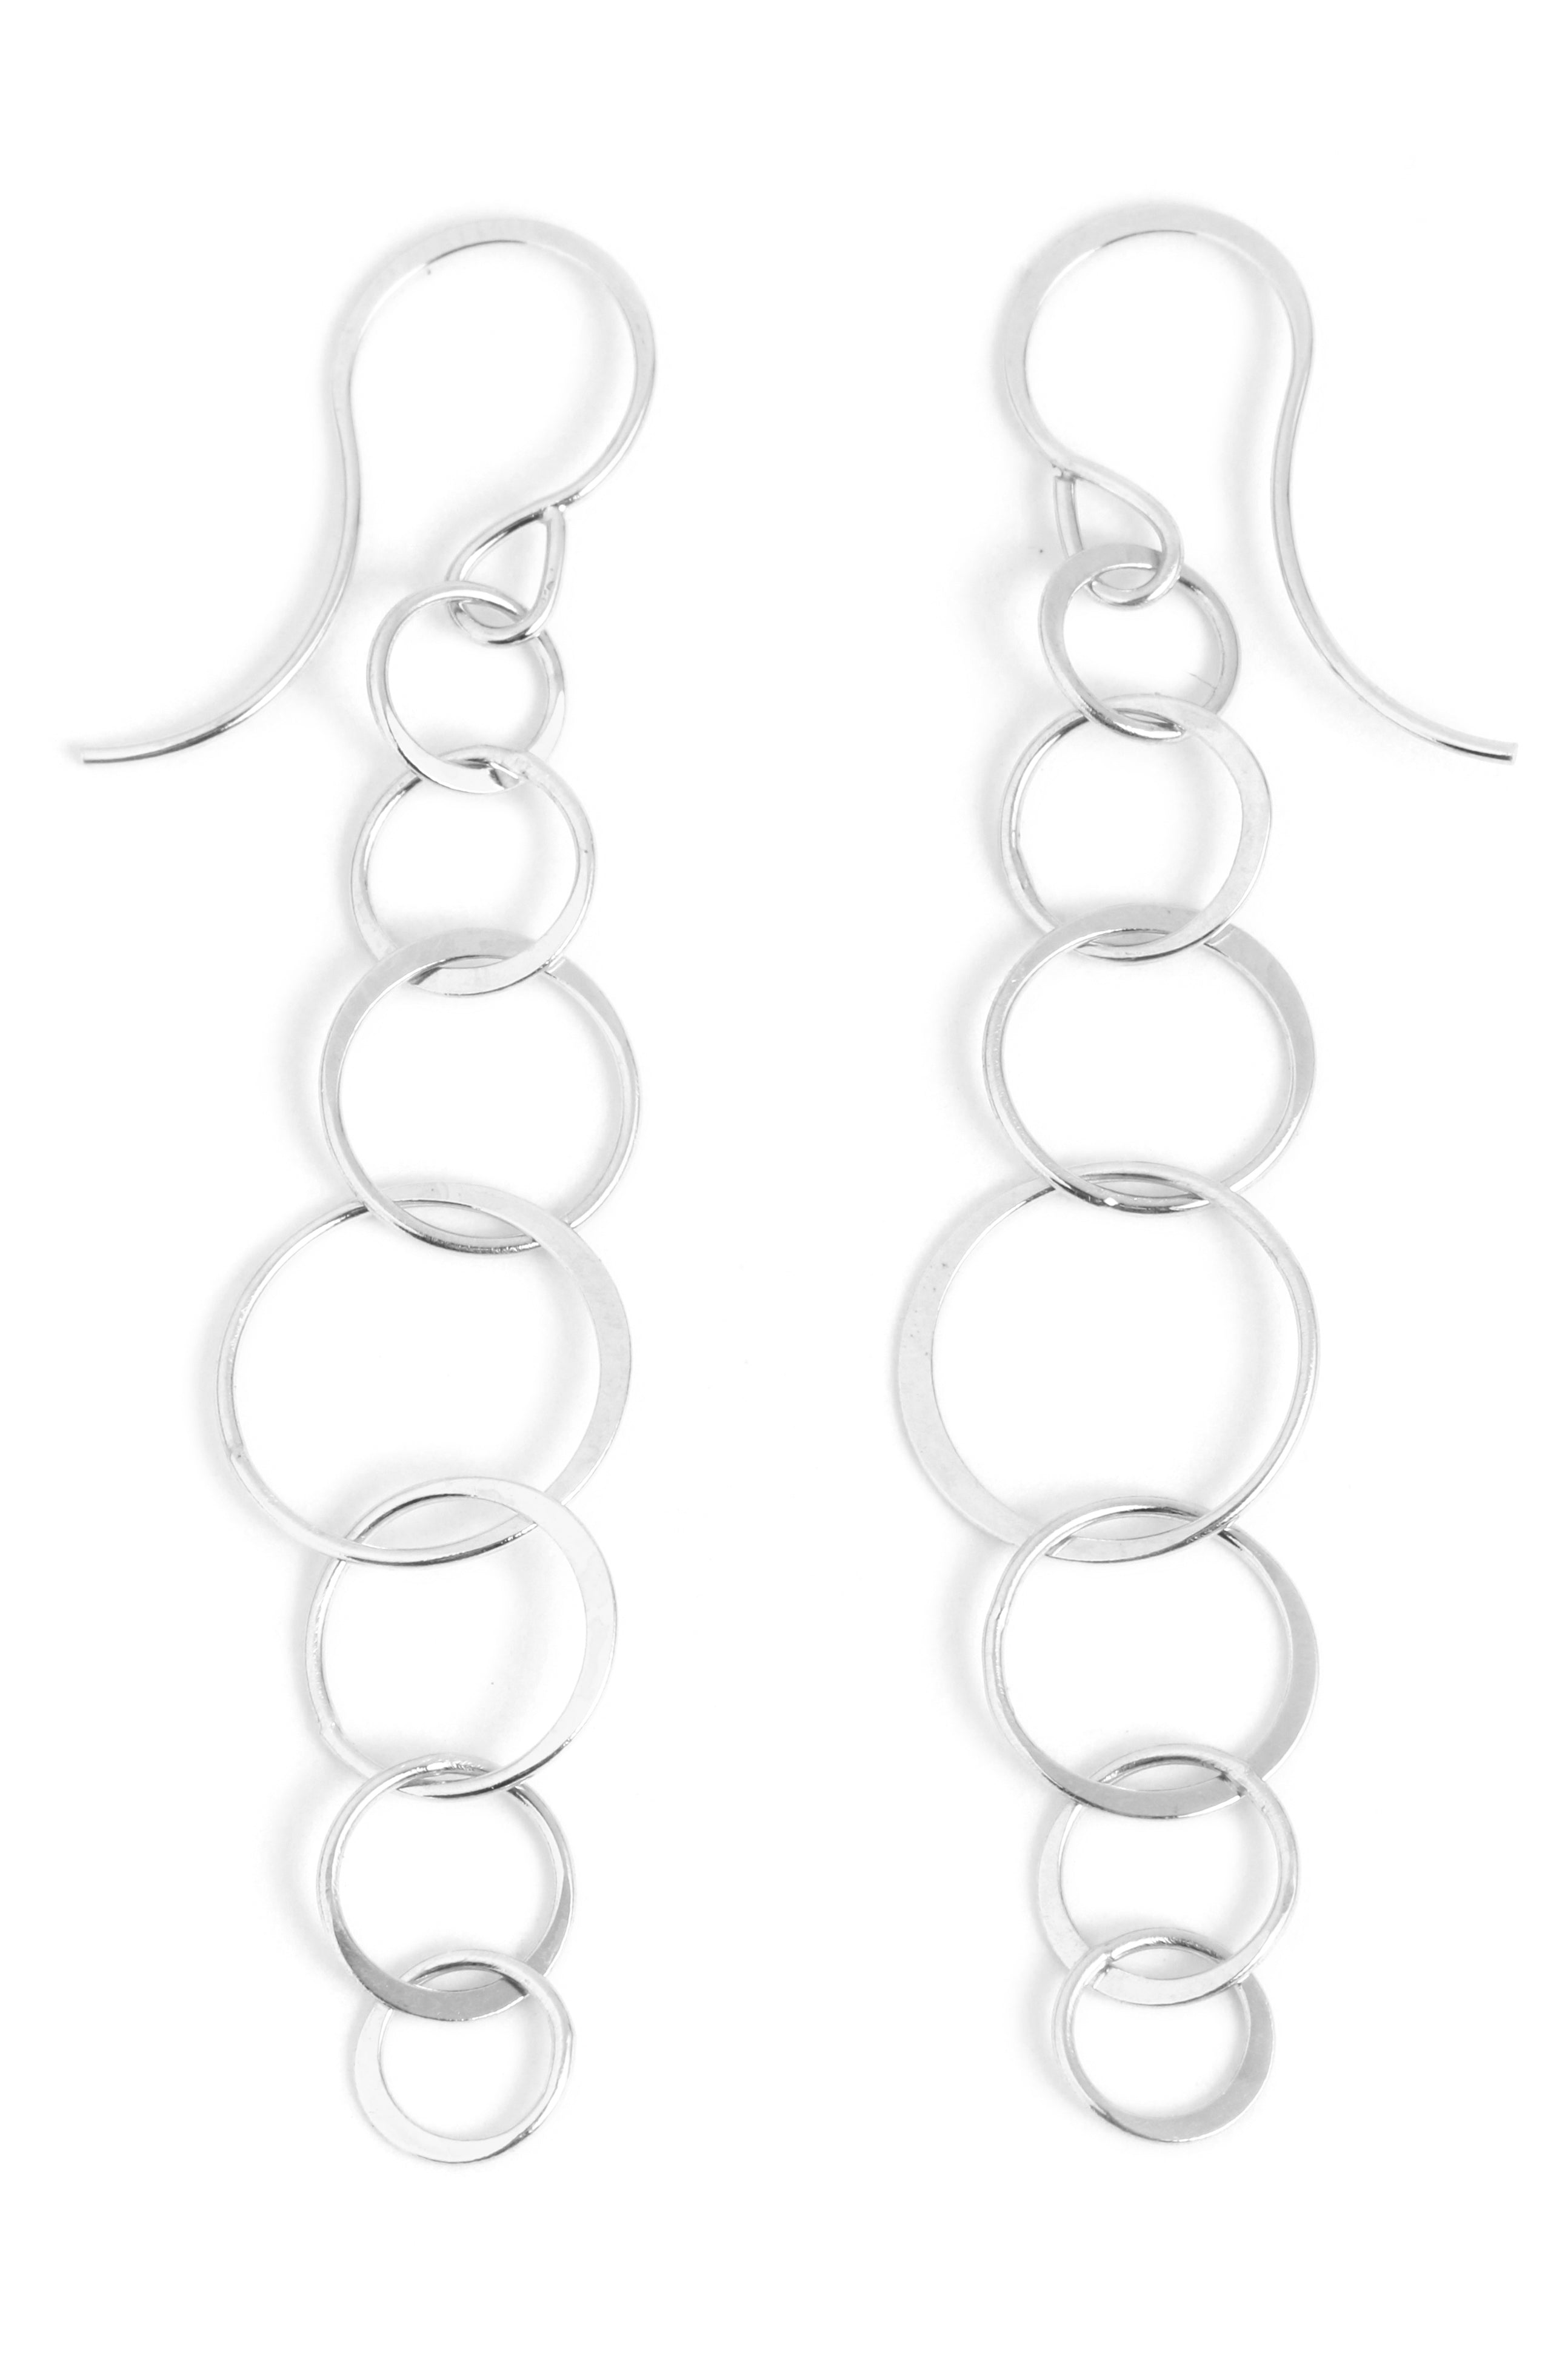 Long lightweight chain earrings